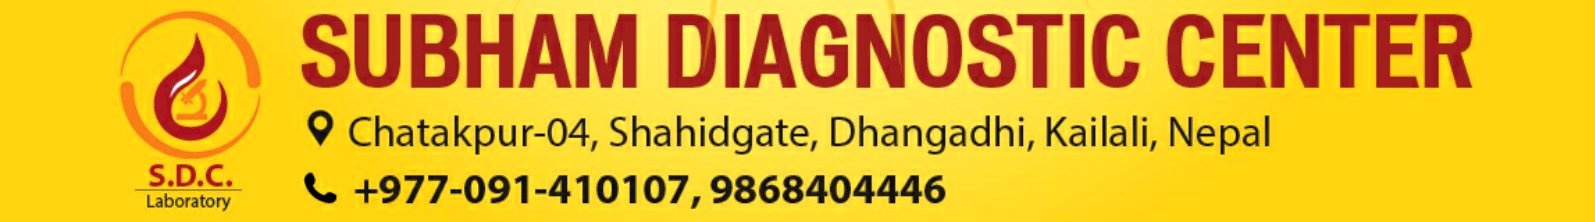 Subham Diagnostic Center Banner